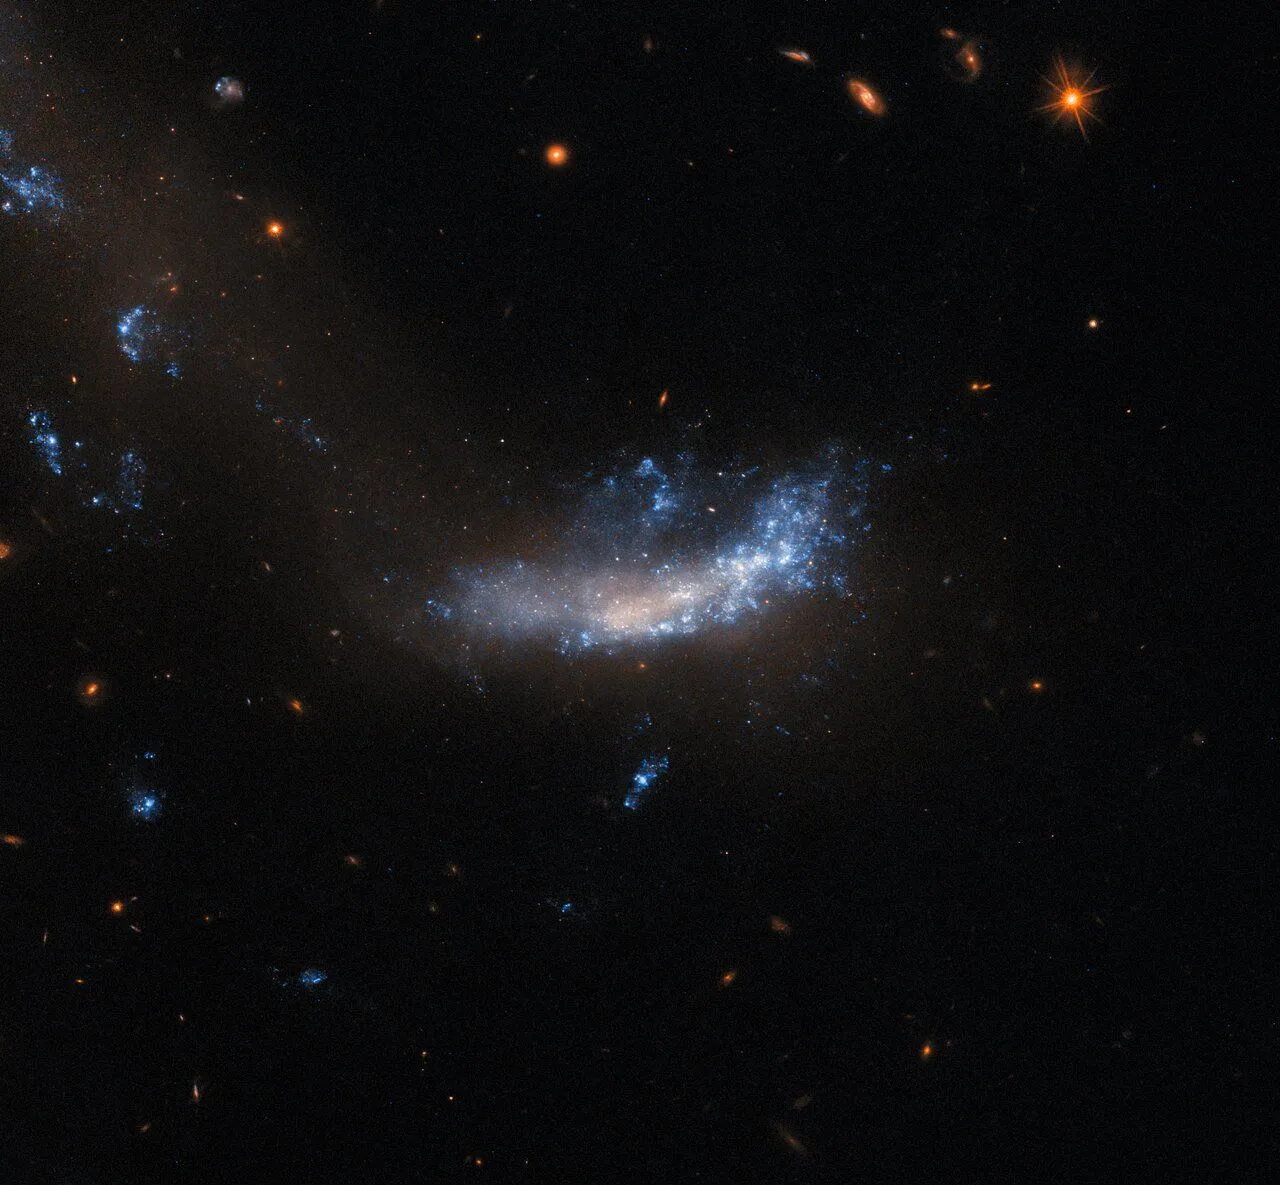 Eine Galaxie, die flach und unförmig ist. Oberhalb und auf der rechten Seite ist sie von leuchtenden Gas- und Staubfahnen bedeckt, während ihr Zentrum und ihre linke Seite eher trübe und fleckig sind. Eine Spur aus dunklem, trübem Staub zieht sich von unterhalb der Galaxie nach oben und nach links, wo sich drei weitere helle Flecken befinden. Der Hintergrund um die Galaxie ist recht dunkel, nur ein paar kleine Hintergrundgalaxien und ein Stern sind zu sehen